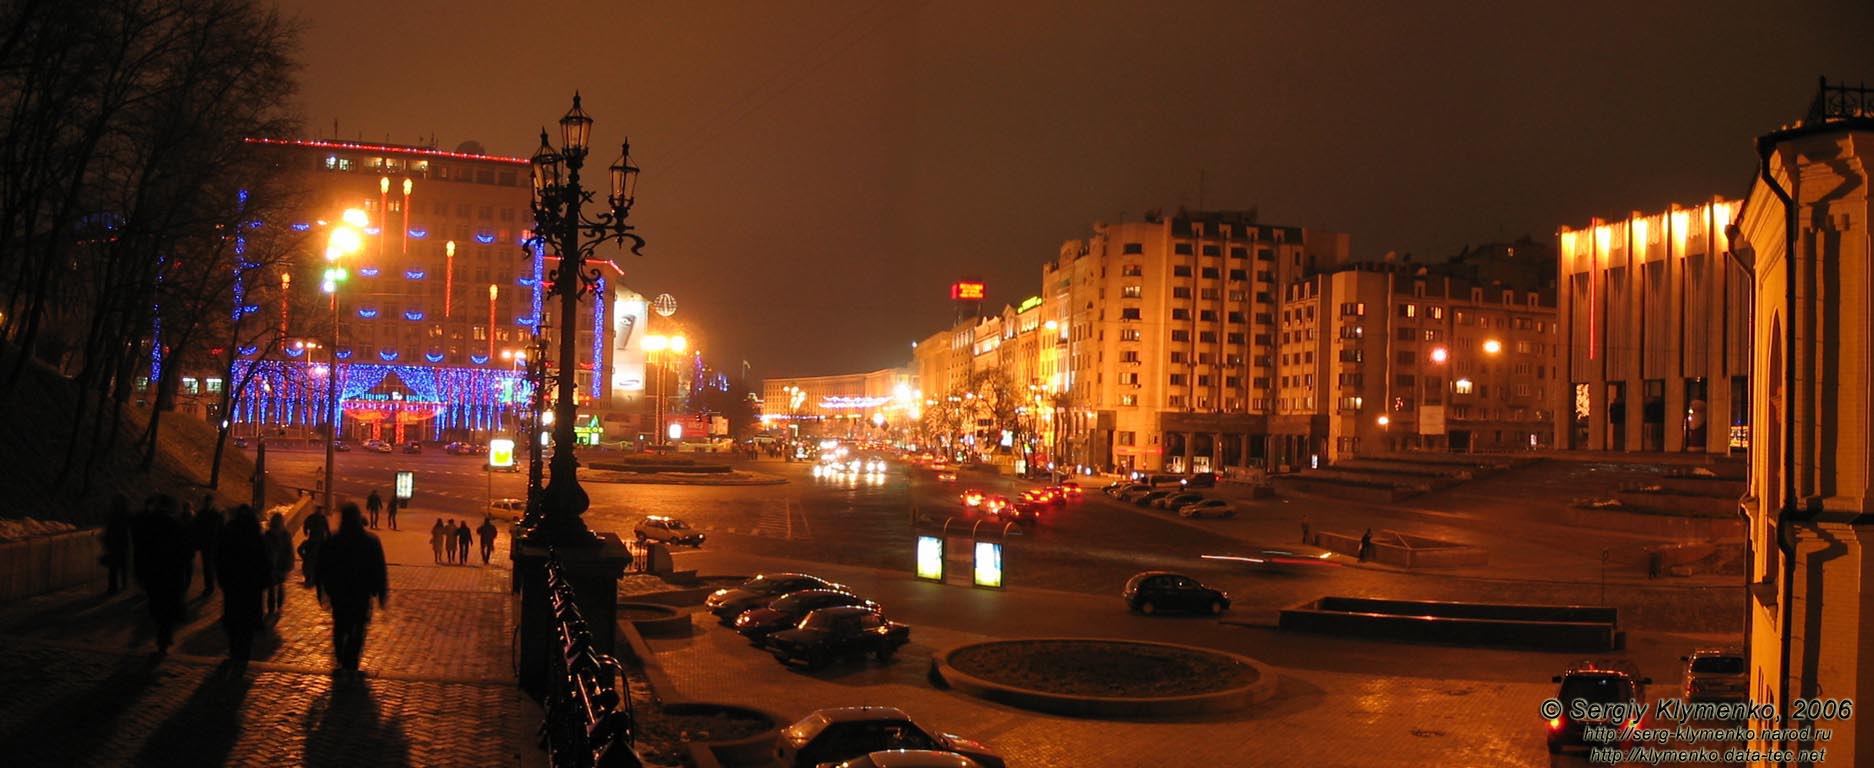 Фото Киева. Европейская площадь и праздничный Крещатик вечером. 2 января 2006 года.